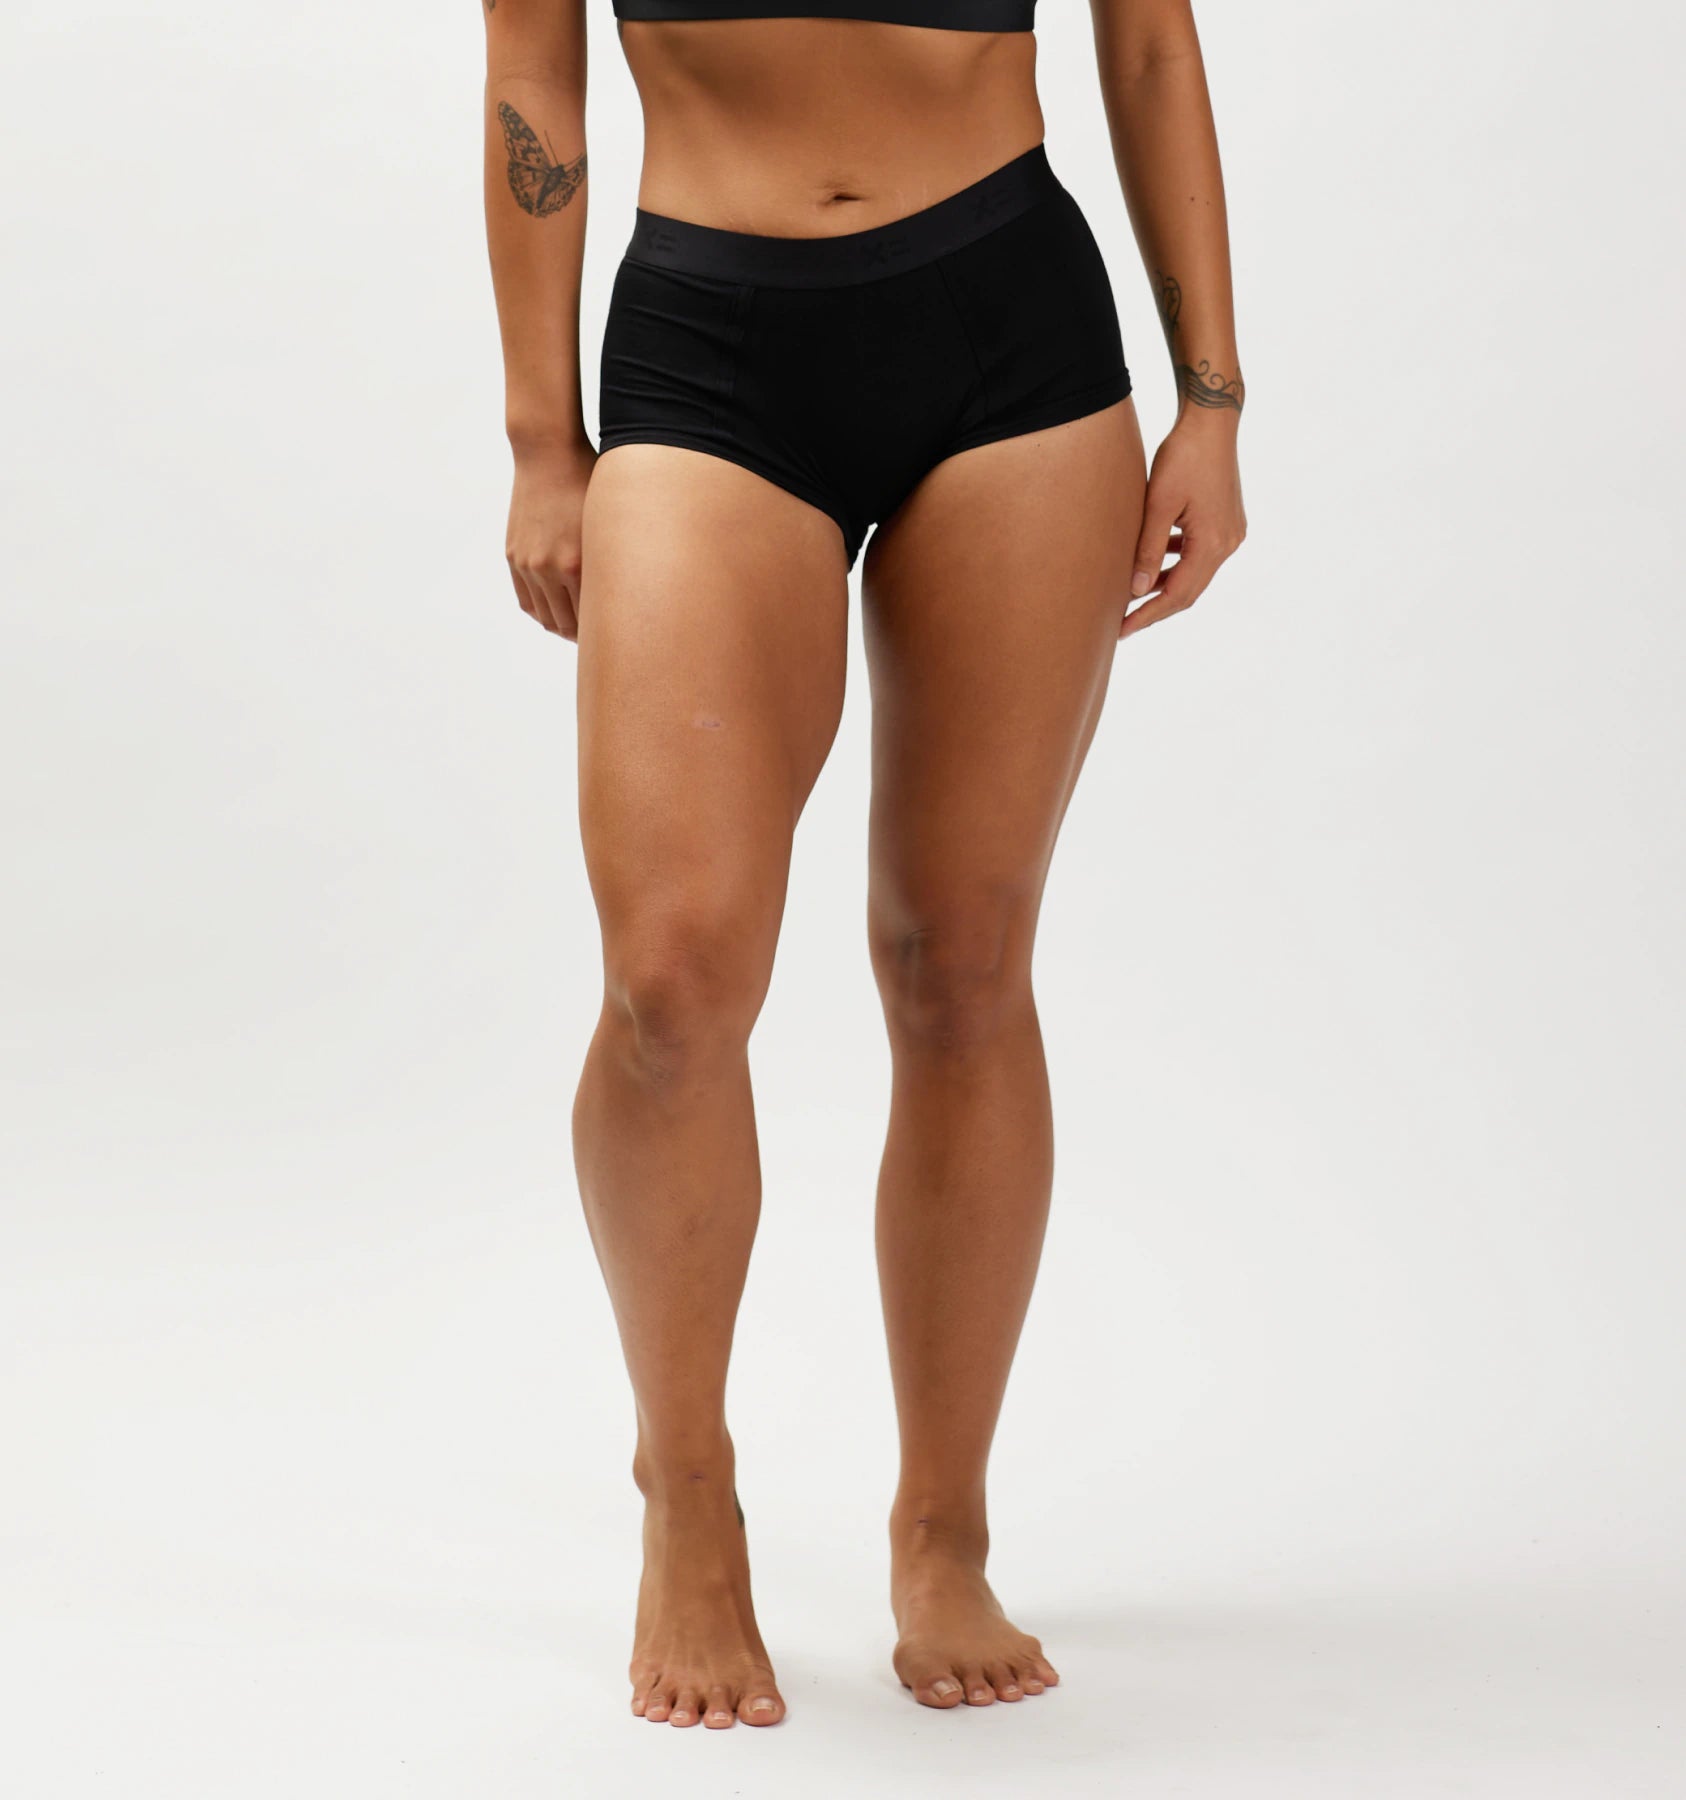 Tomboyx Boxer Briefs Underwear, 4.5 Inseam, Cotton Stretch Comfortable Boy  Shorts Black Logo Xxx Large : Target